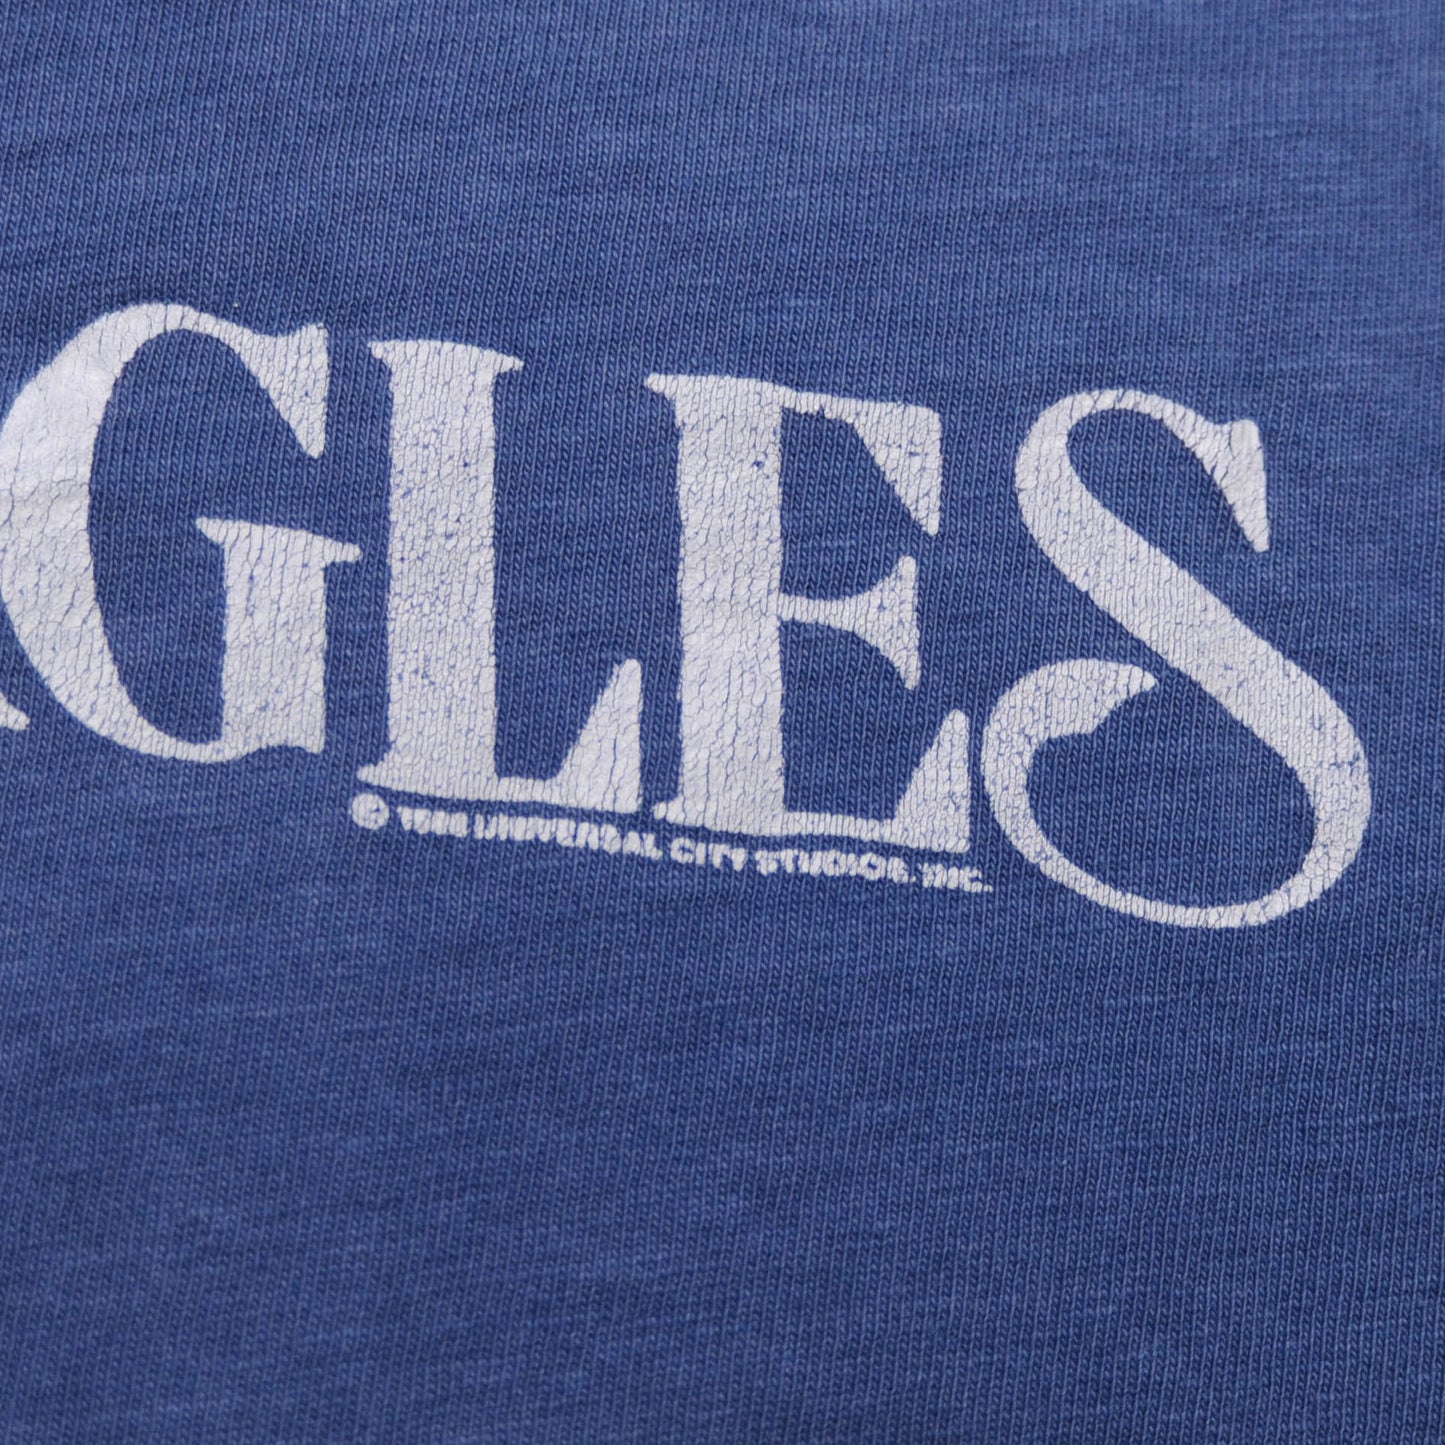 80's LEGAL EAGLES騙し絵Tシャツ(L)/A2963T-S